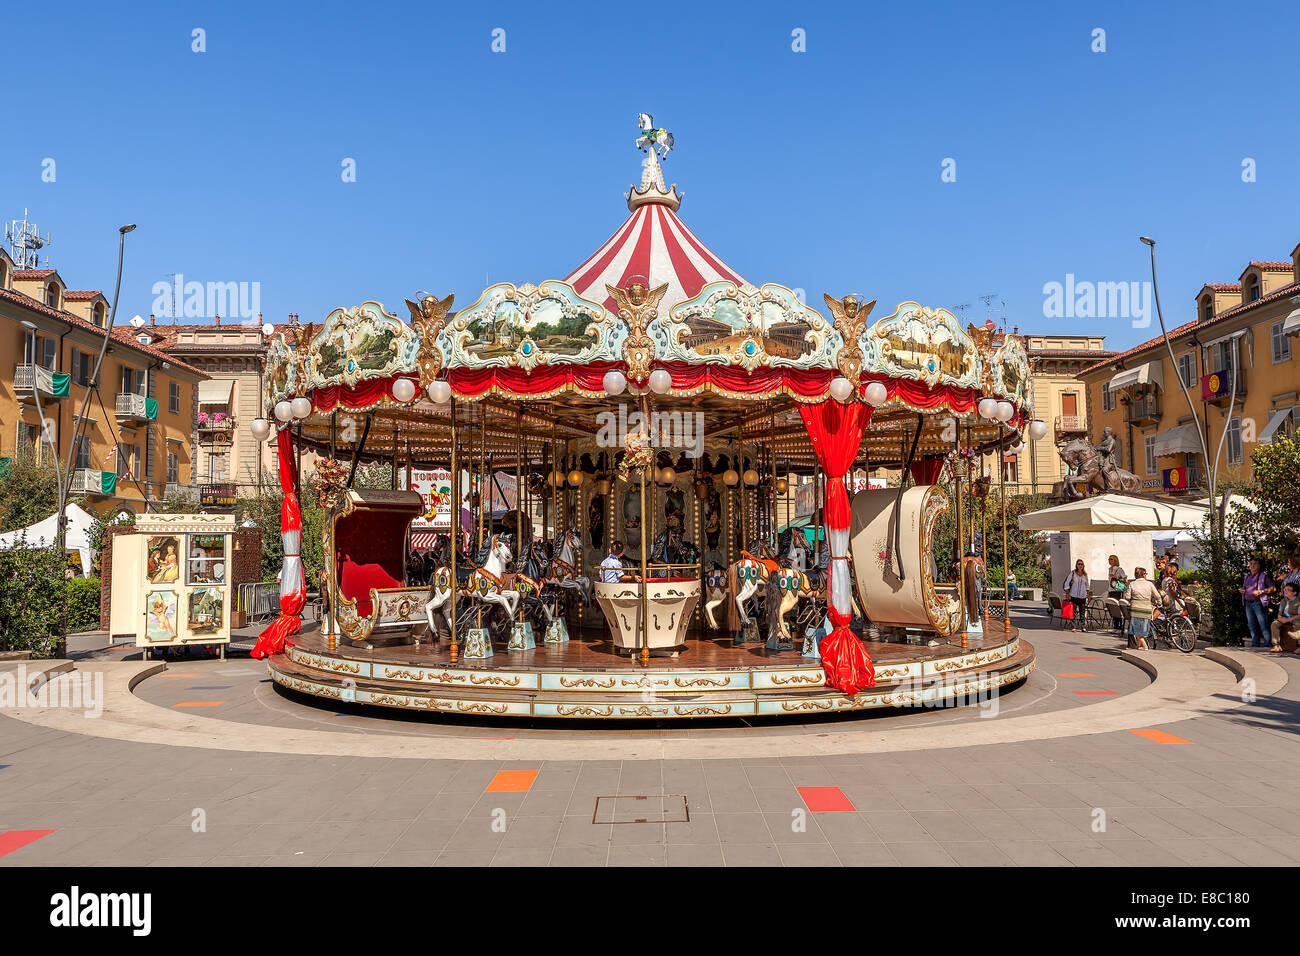 Carousel sur town square à Alba, Italie. Banque D'Images